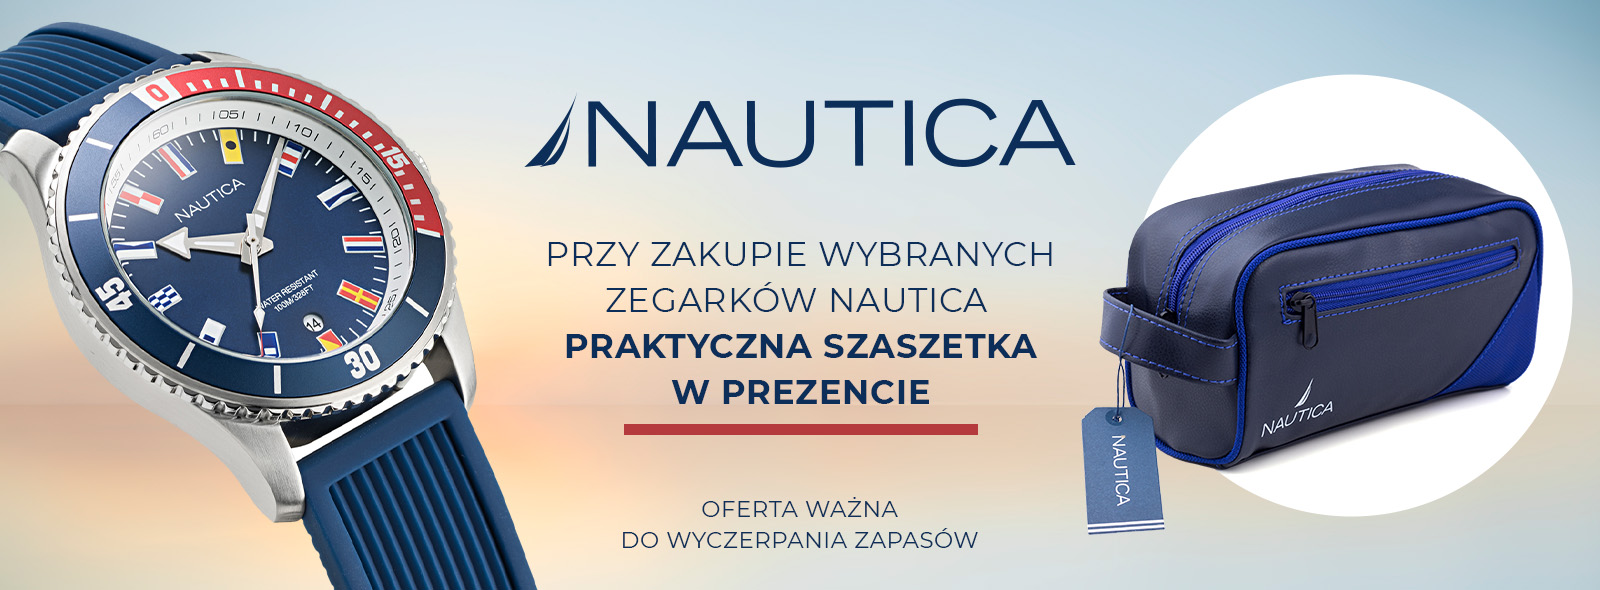 Promocja Nautica – praktyczna saszetka gratis!